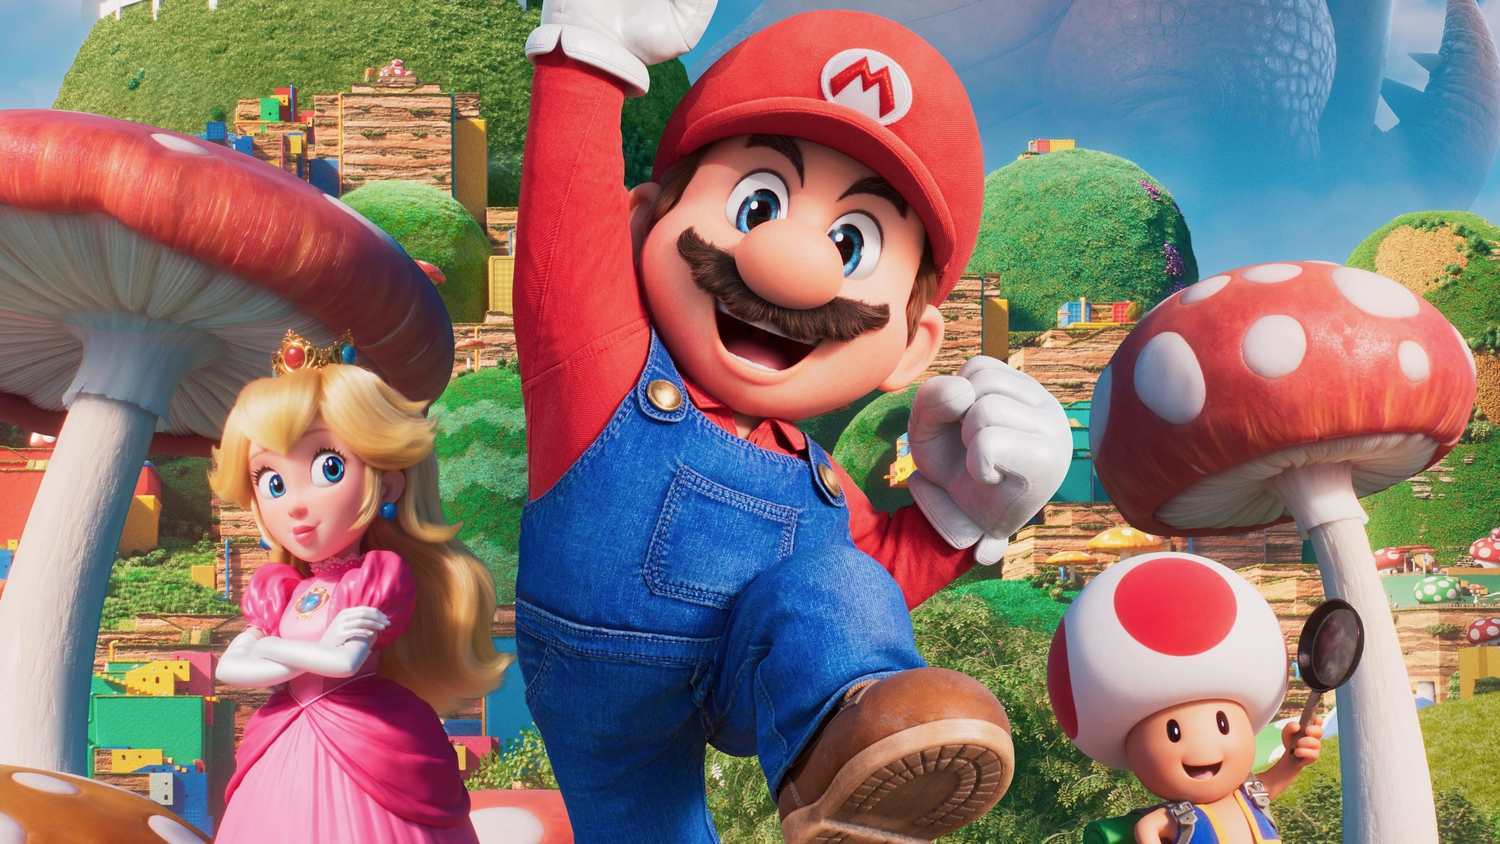 Fãs de Super Mario estão em pânico com rumores de que o personagem